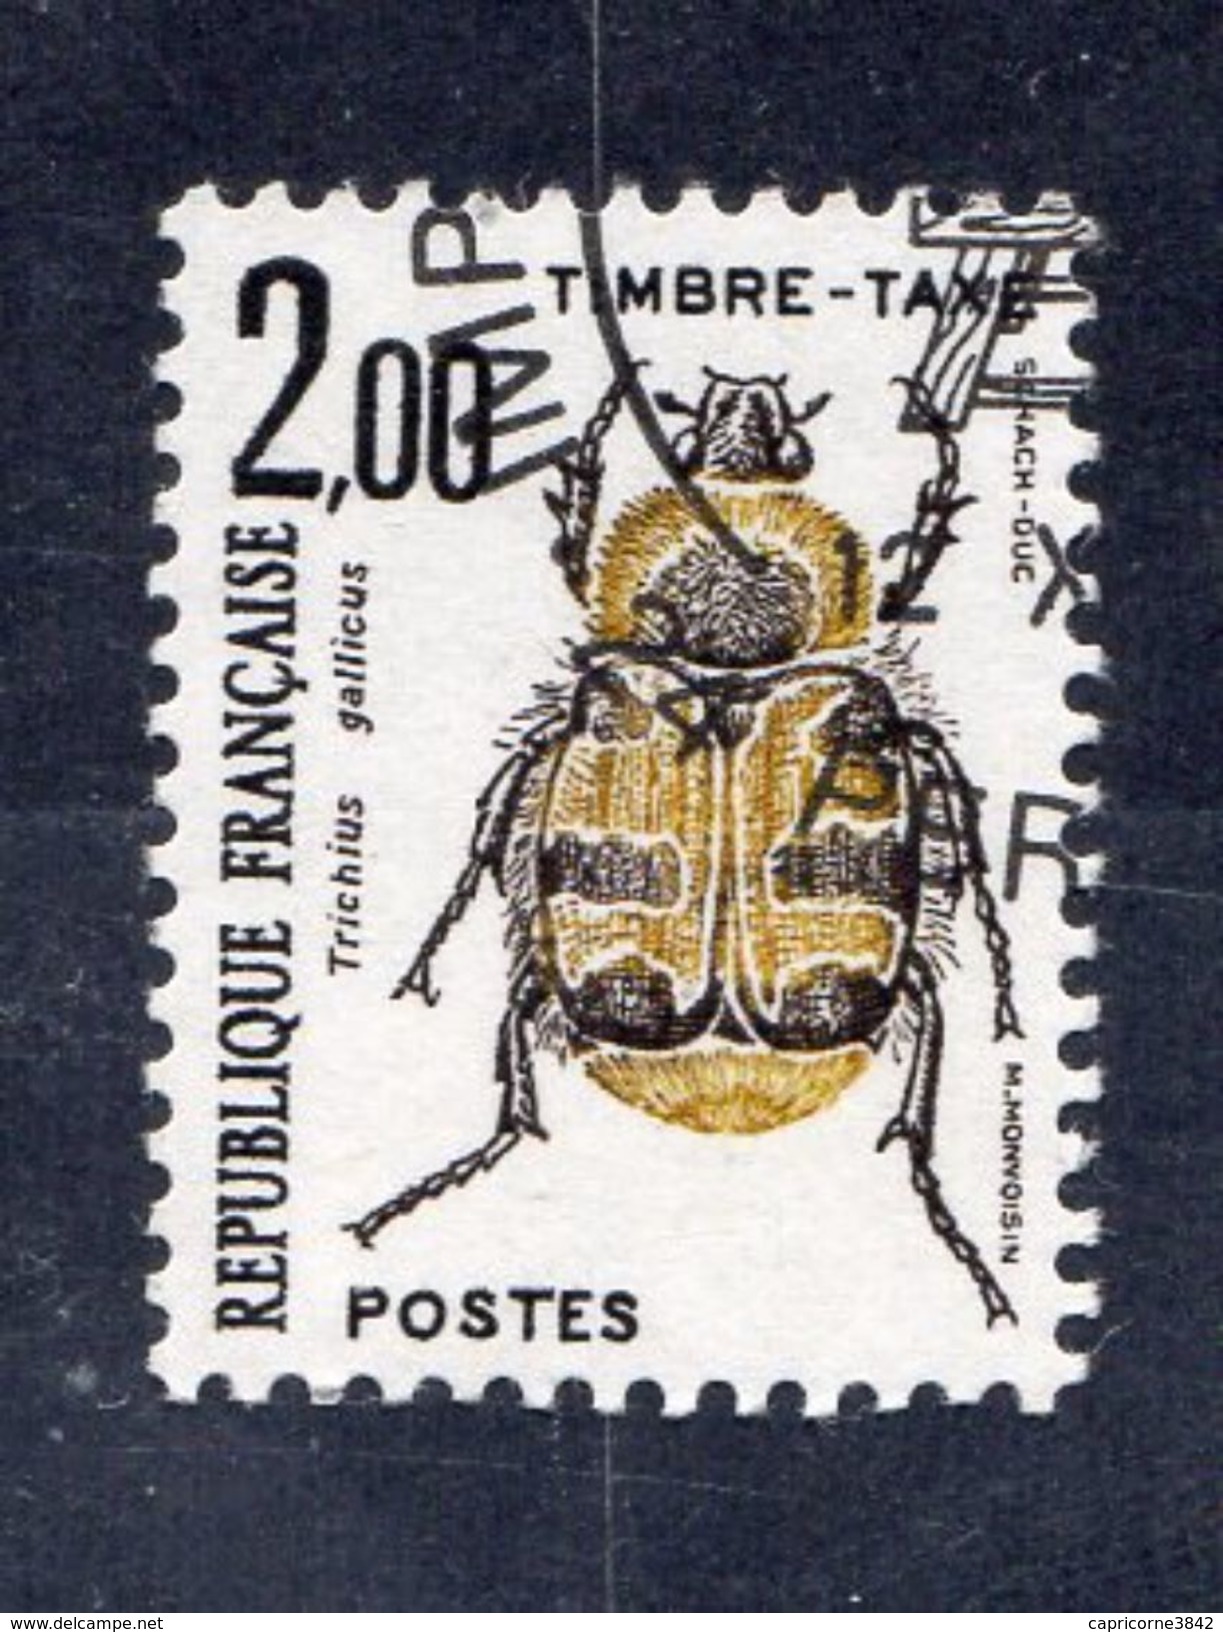 Timbre Taxe "Coléoptère" N° 107 - Neuf  - Préoblitéré Cachet "Imprimerie Des Timbres-Poste De Périgueux" - 1960-.... Postfris